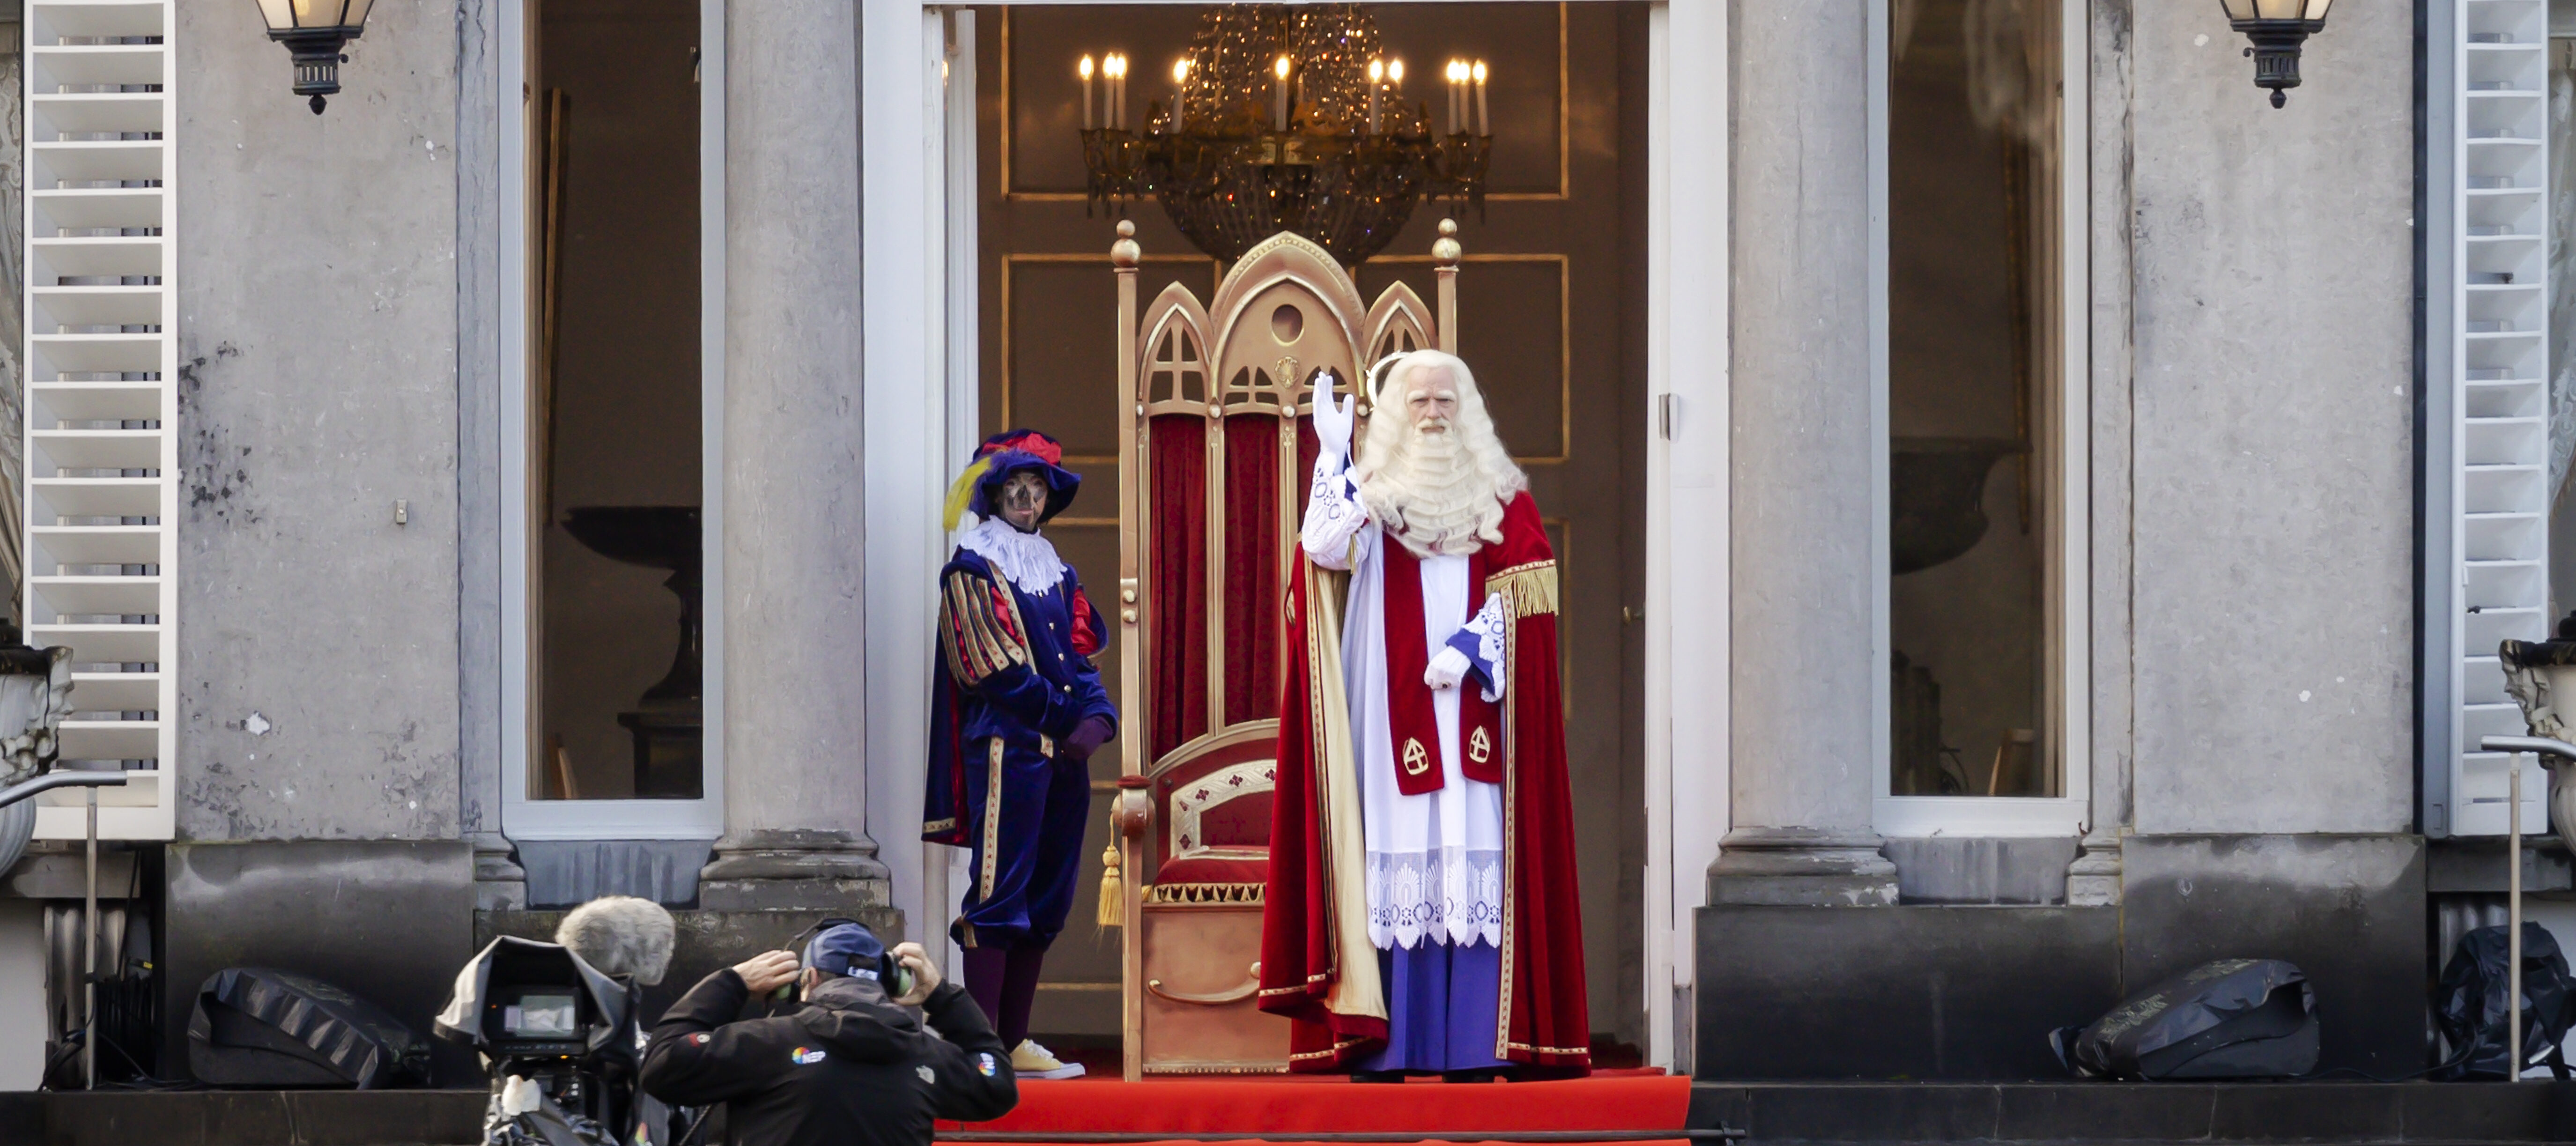 Extractie Klas accent Intocht Sinterklaas best bekeken programma van de dag